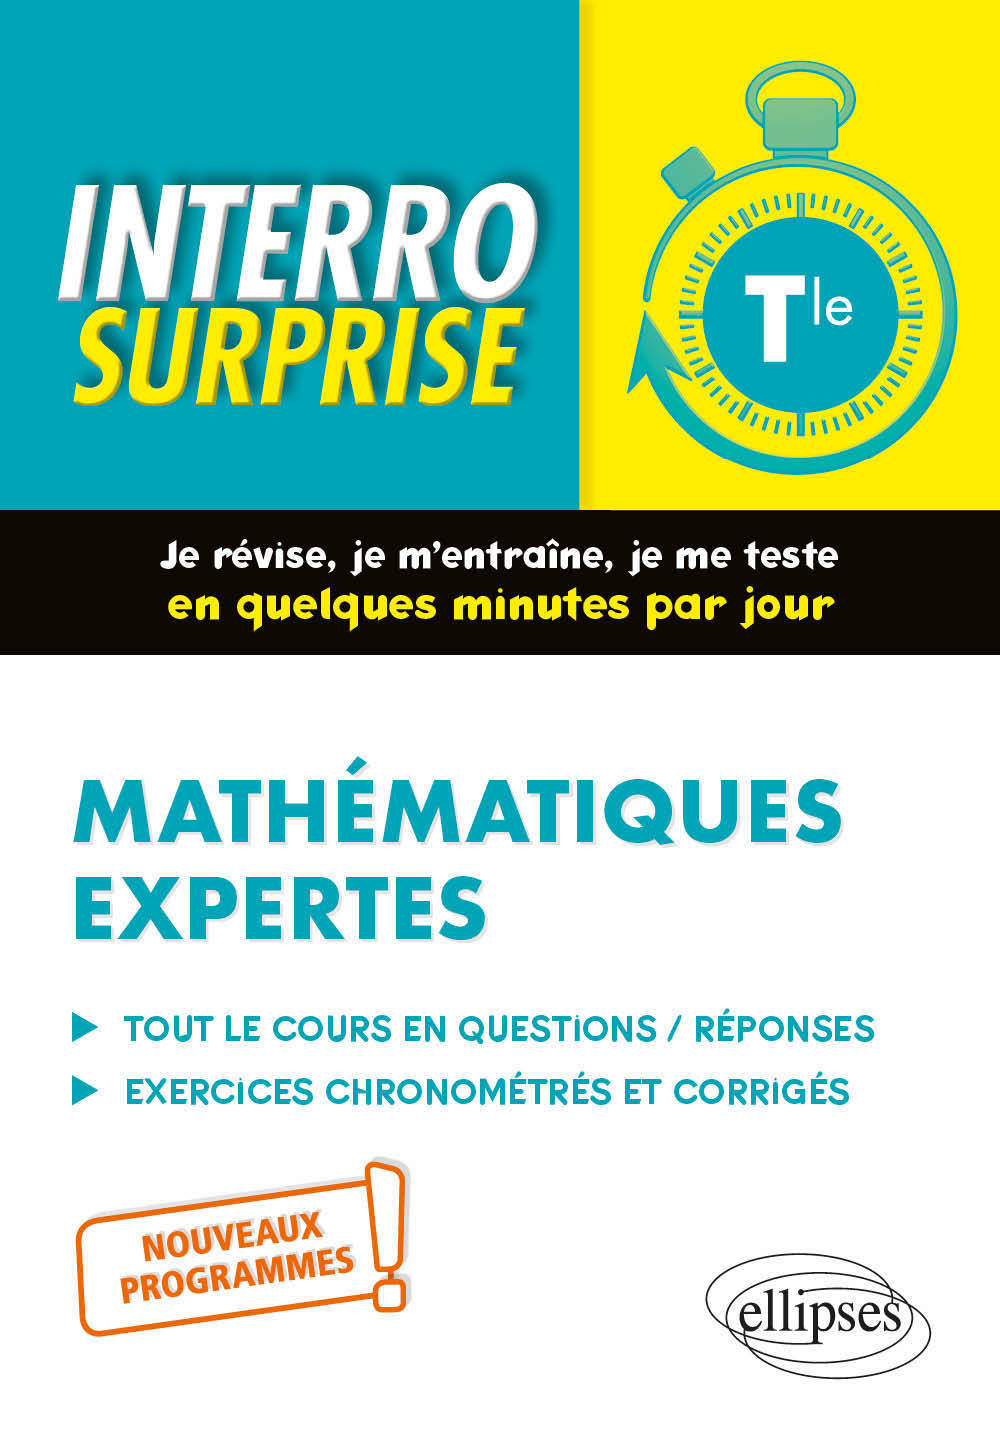 Kniha Mathématiques expertes - Terminale - Nouveaux programmes Bros